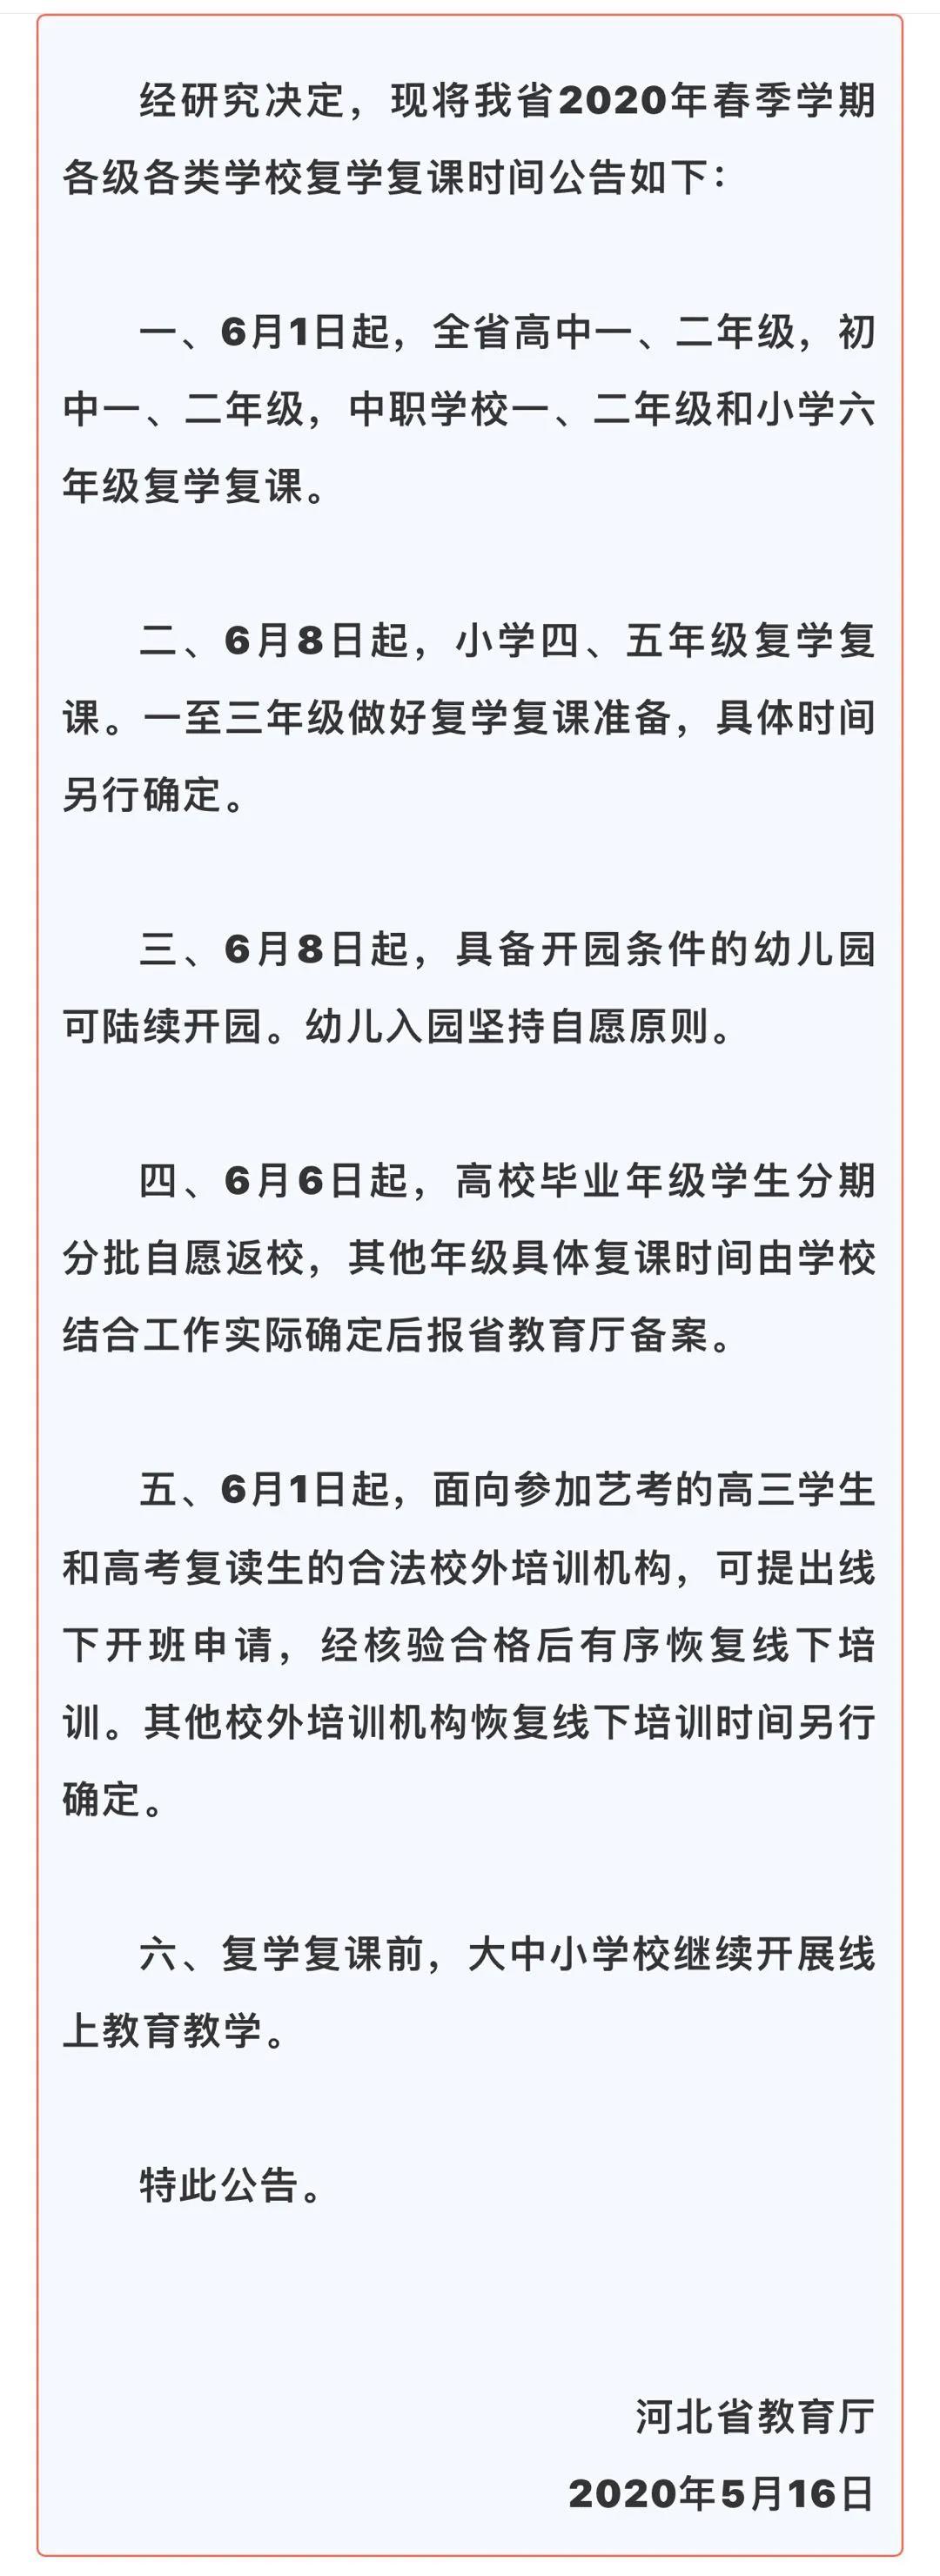 河北省教育厅关于2020年春季各类学校开学通知公告